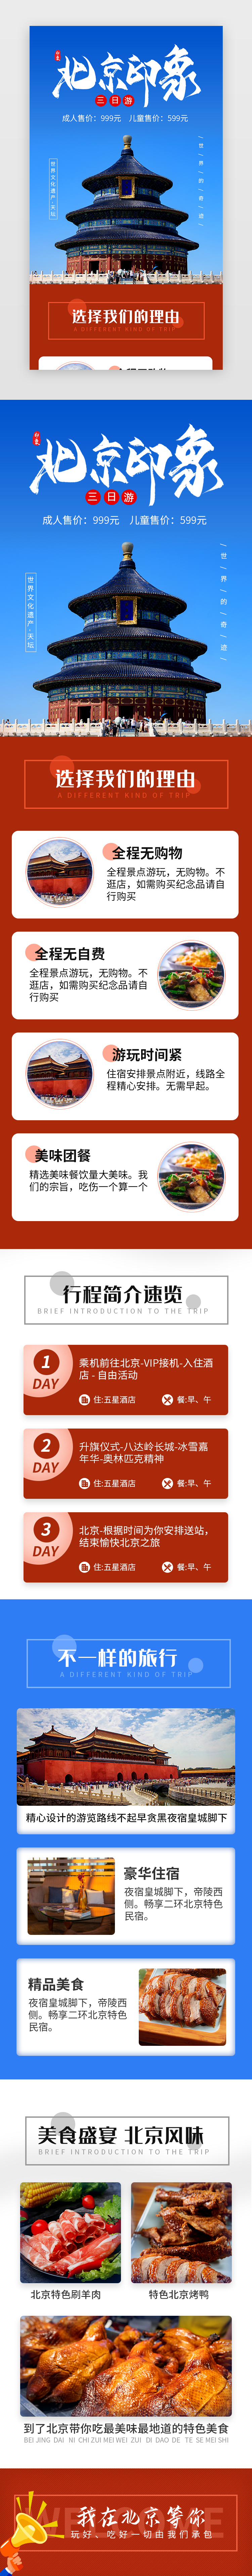 春游北京印象旅行促销活动H5长图海报图片